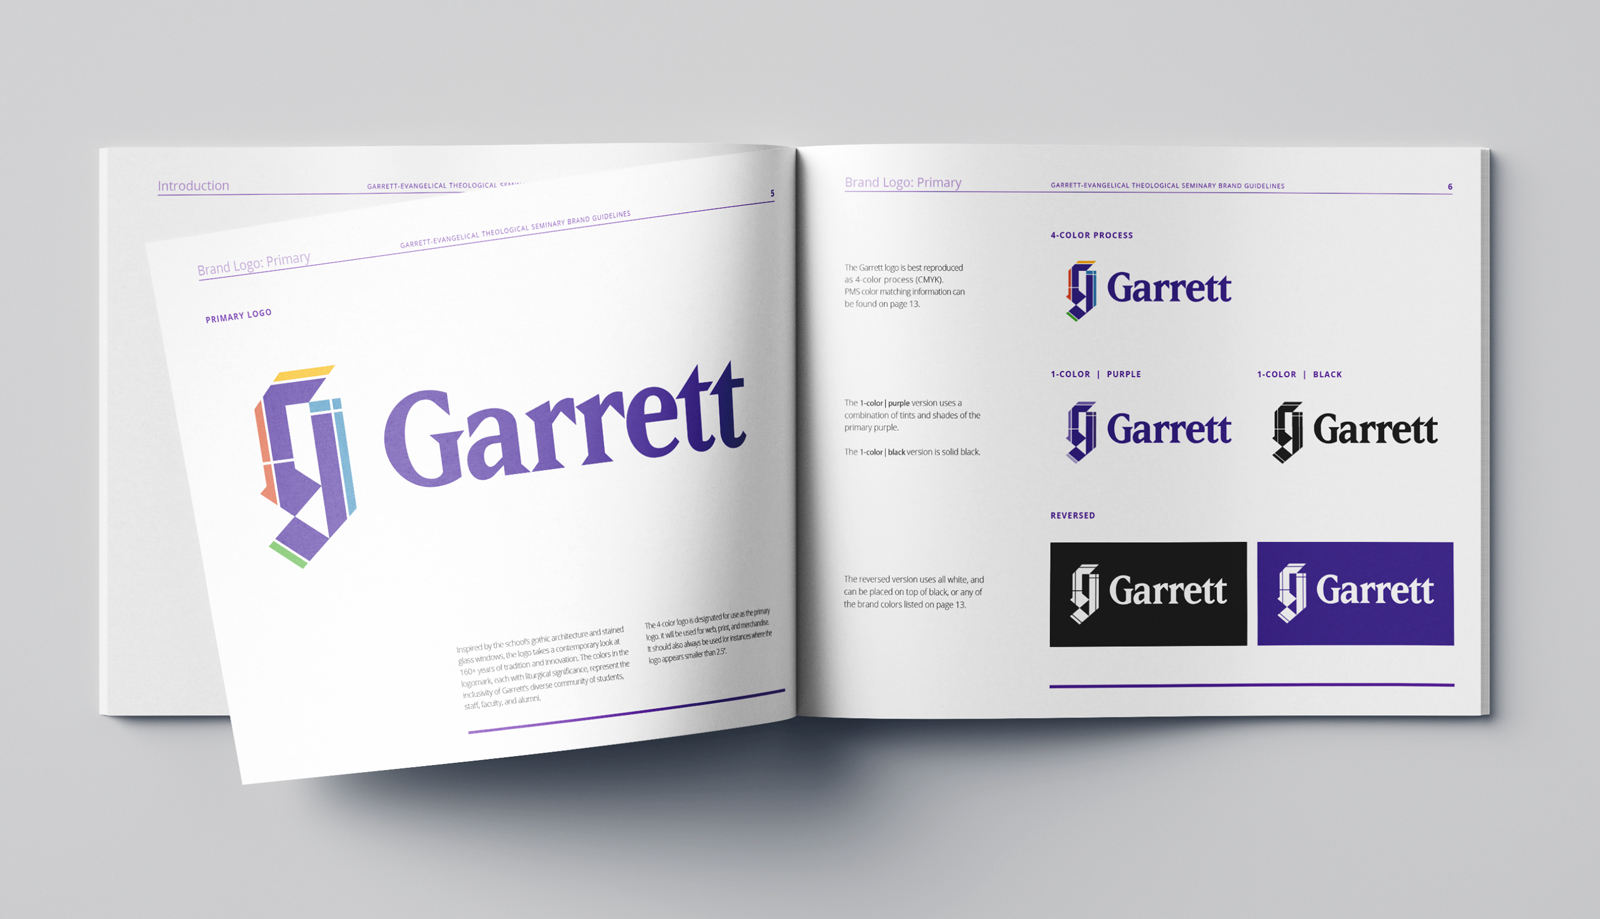 Garrett-evangelical brand guide